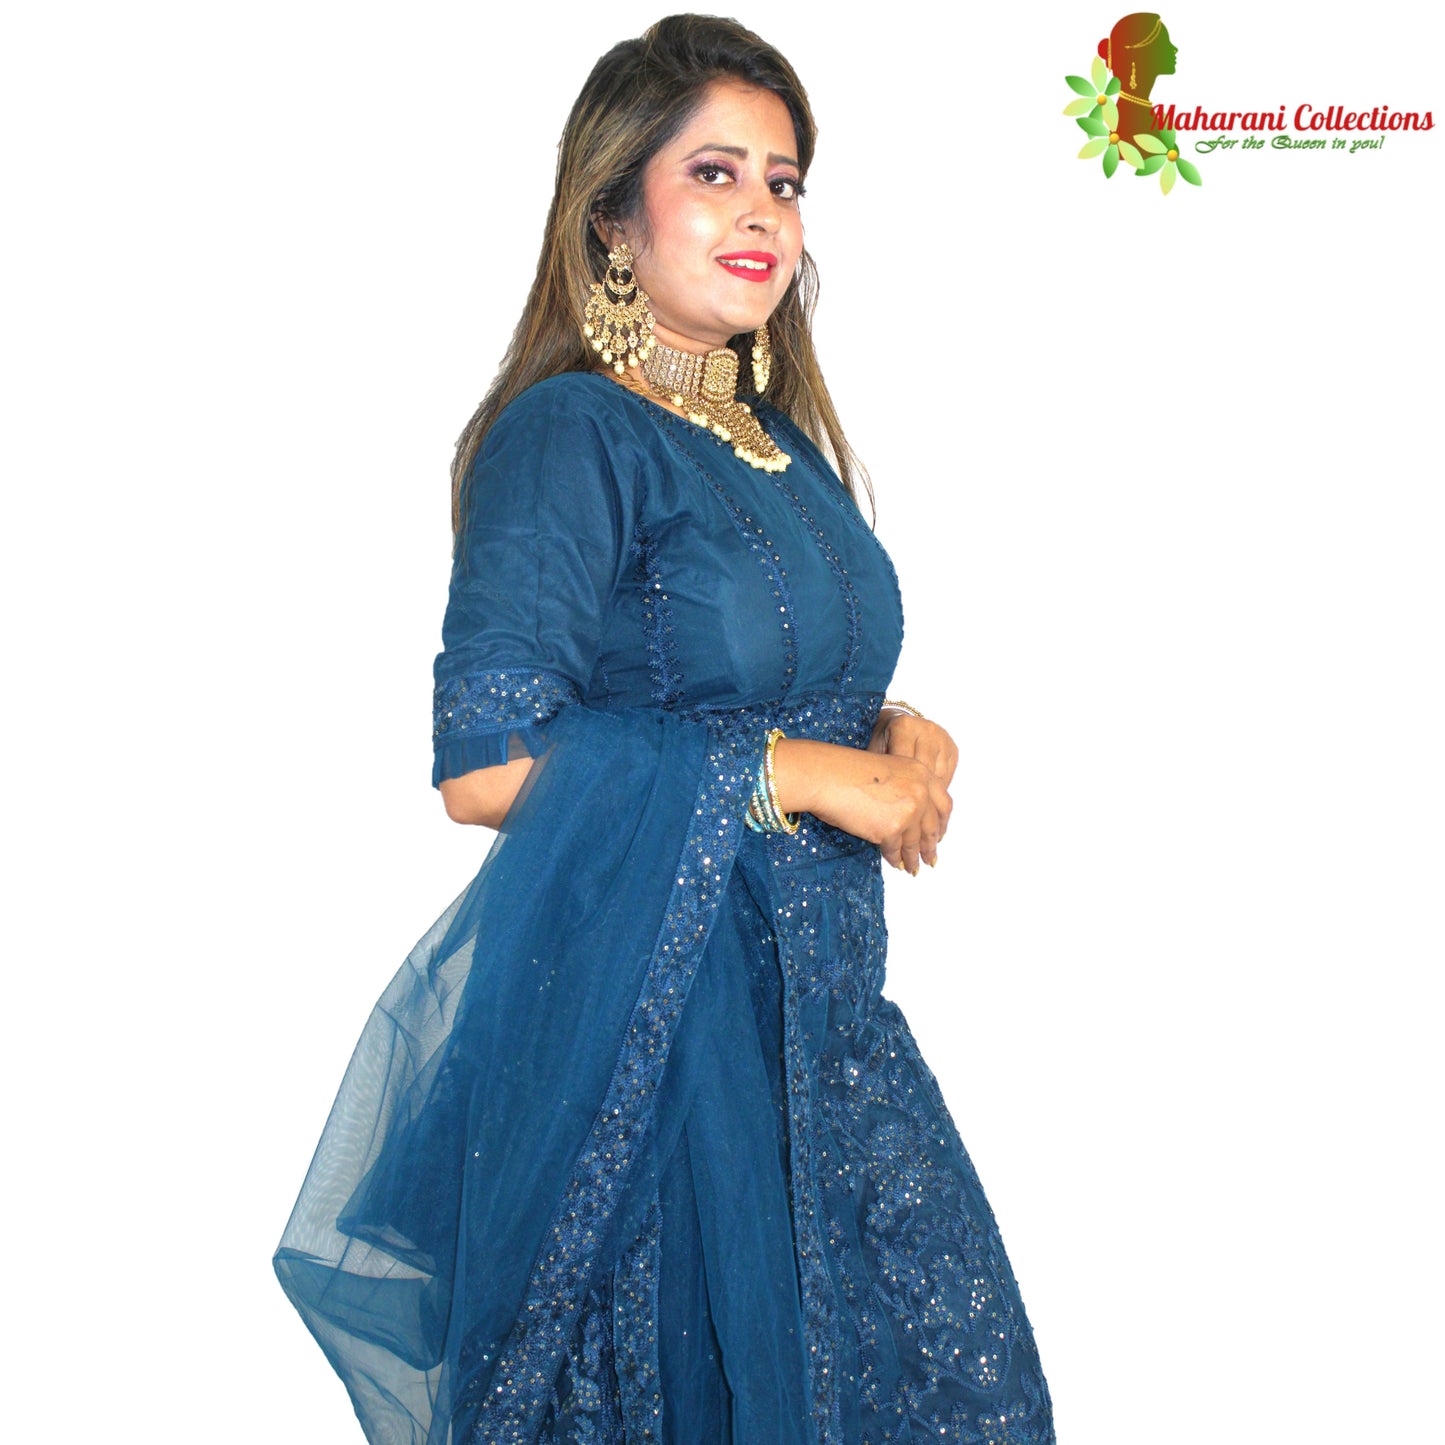 Maharani's Designer Silk & Net Lehenga - Turquoise Blue (M/L)